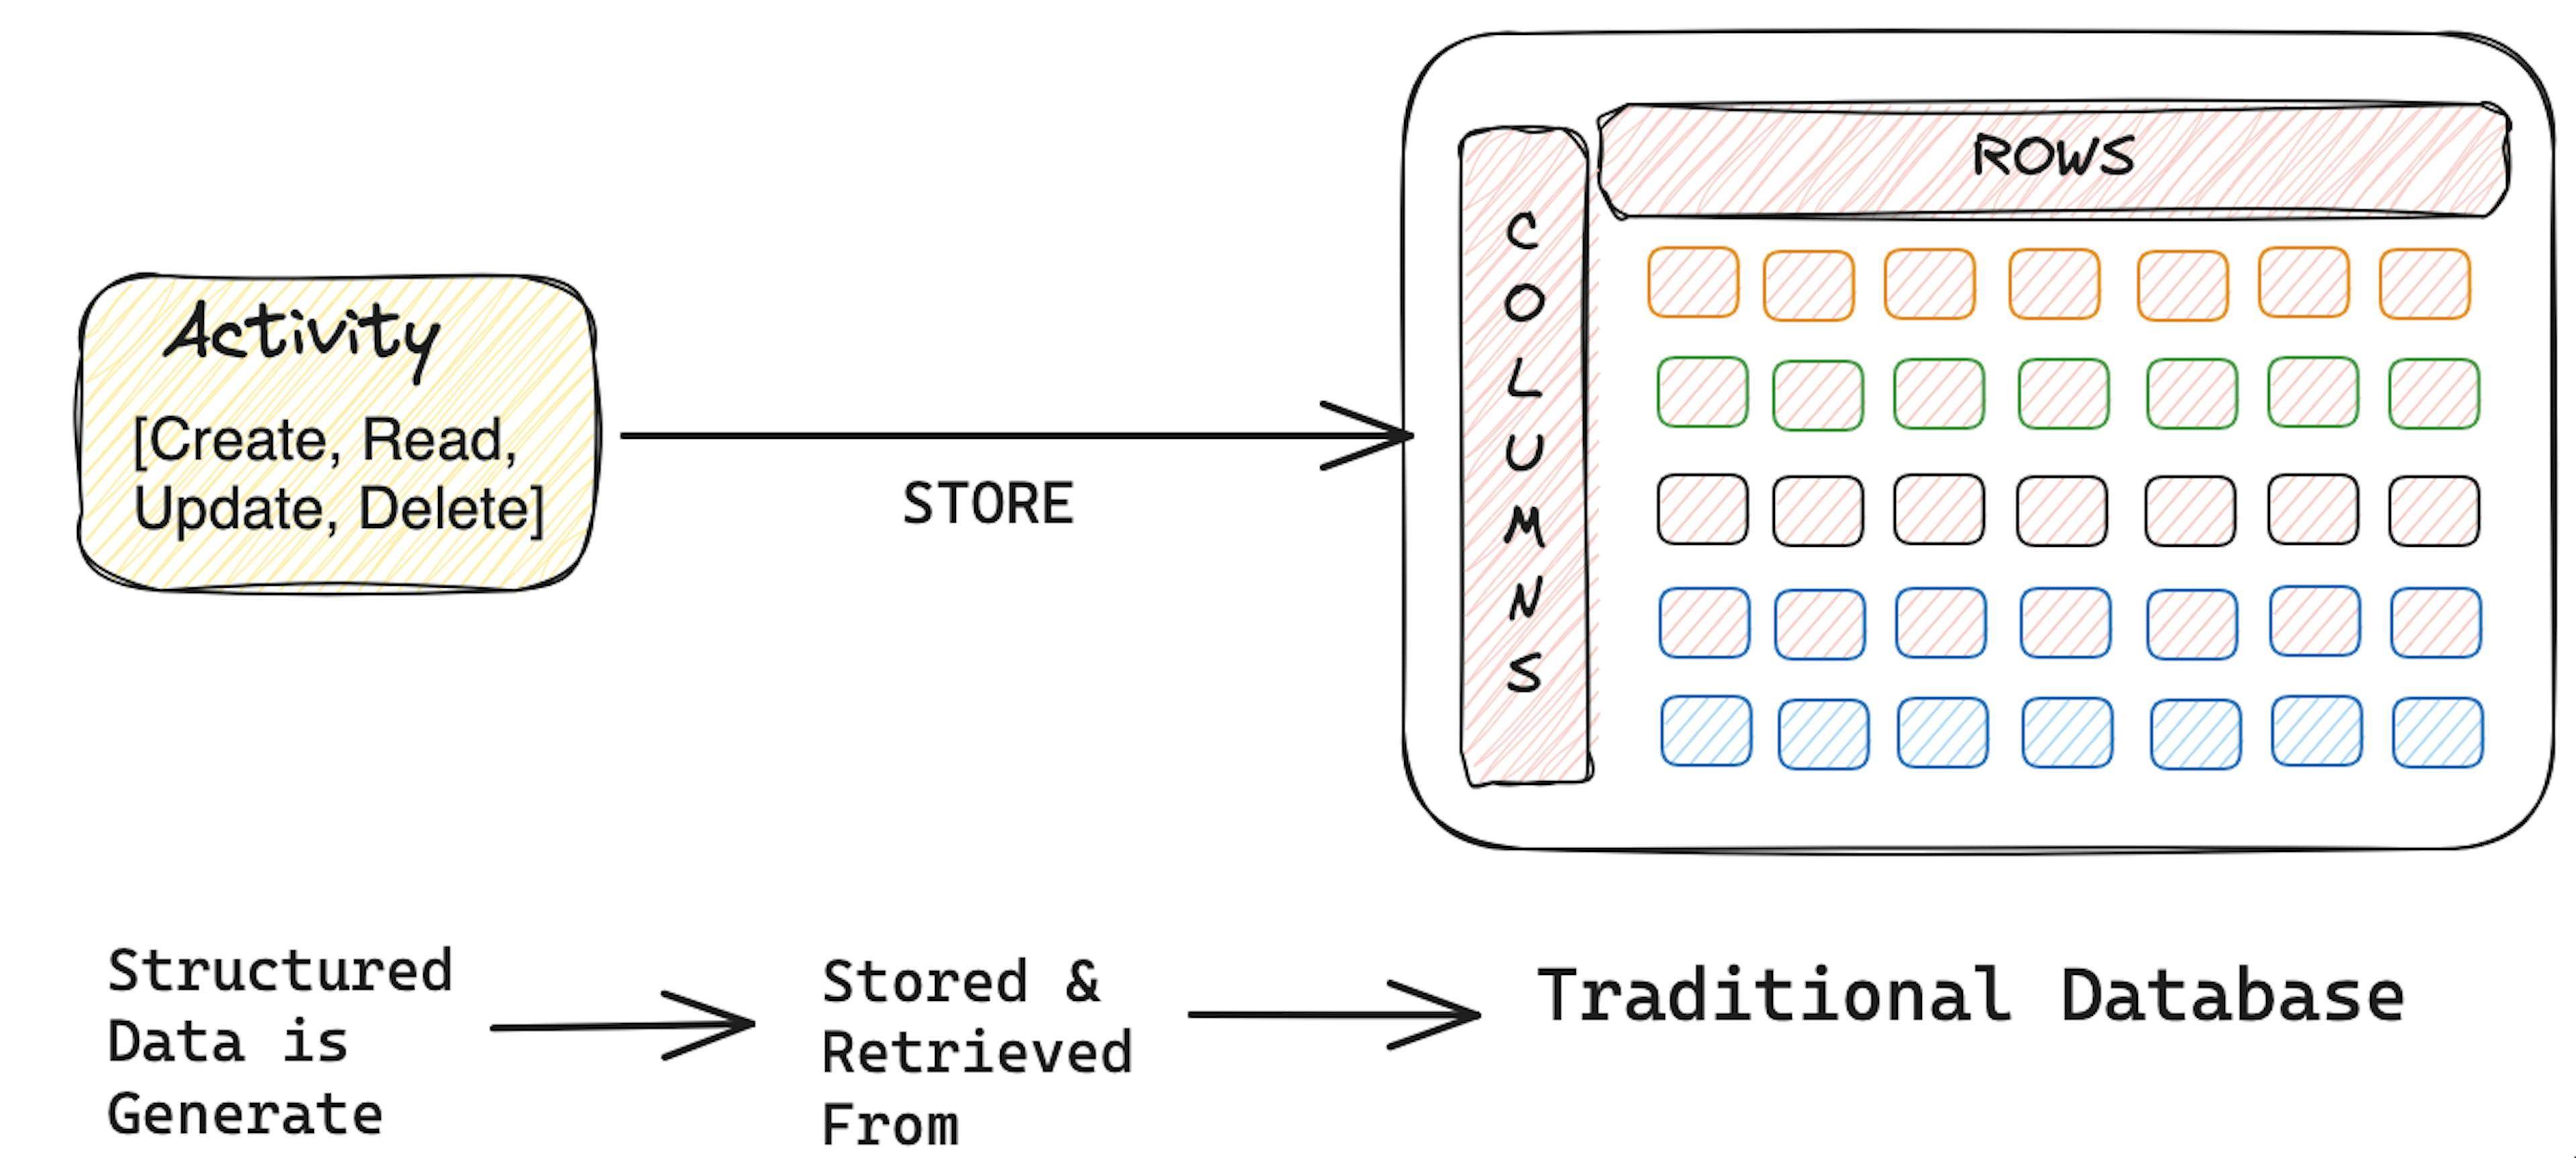 traditional RDBMS storage